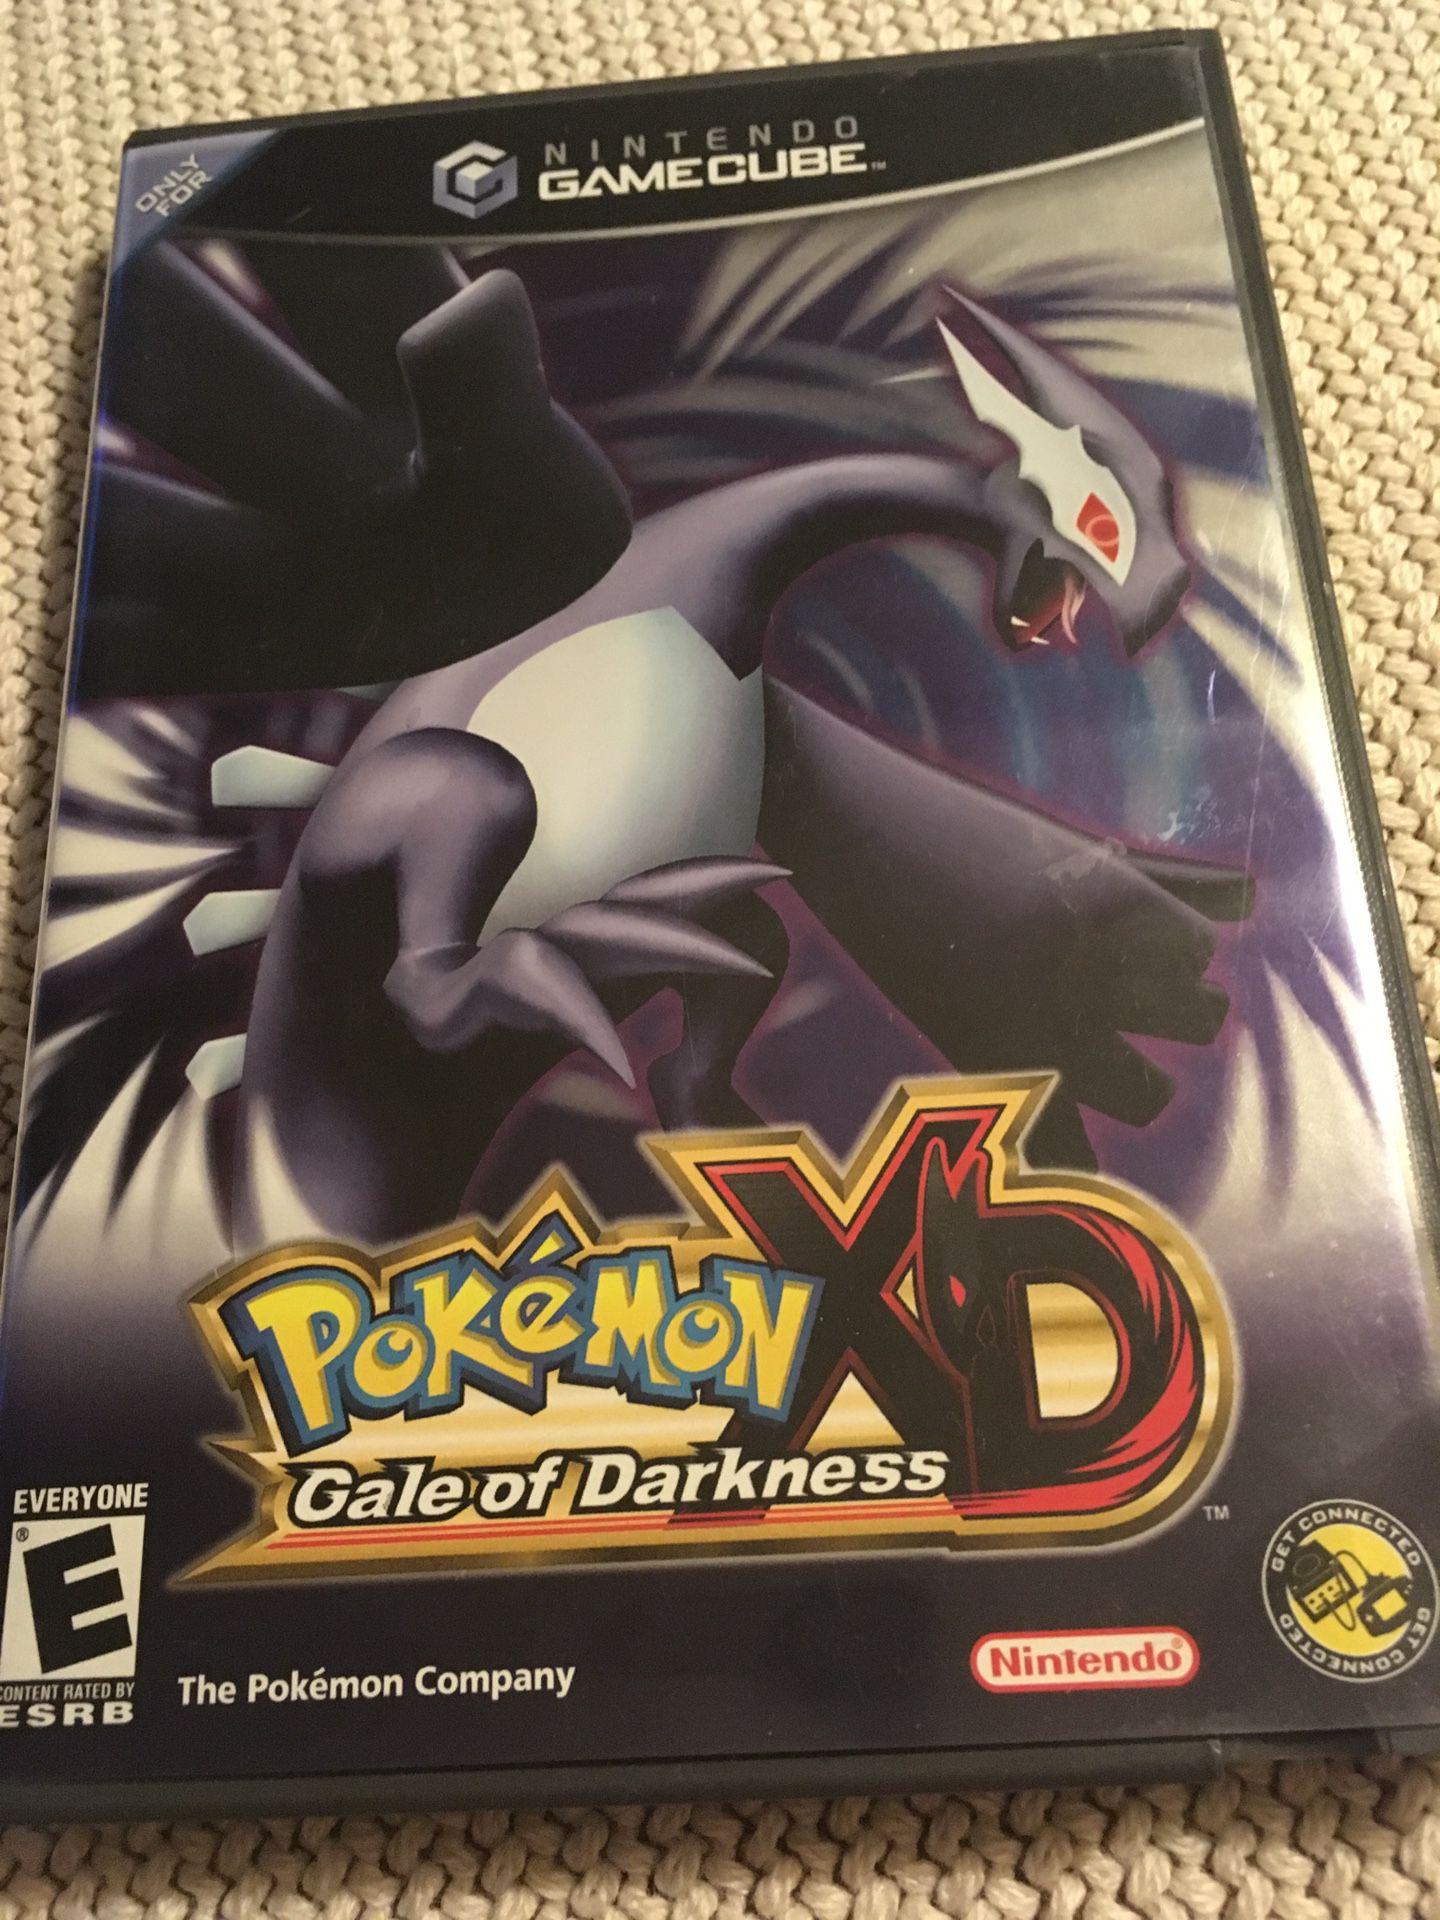 GameCube Pokémon XD gale of darkness